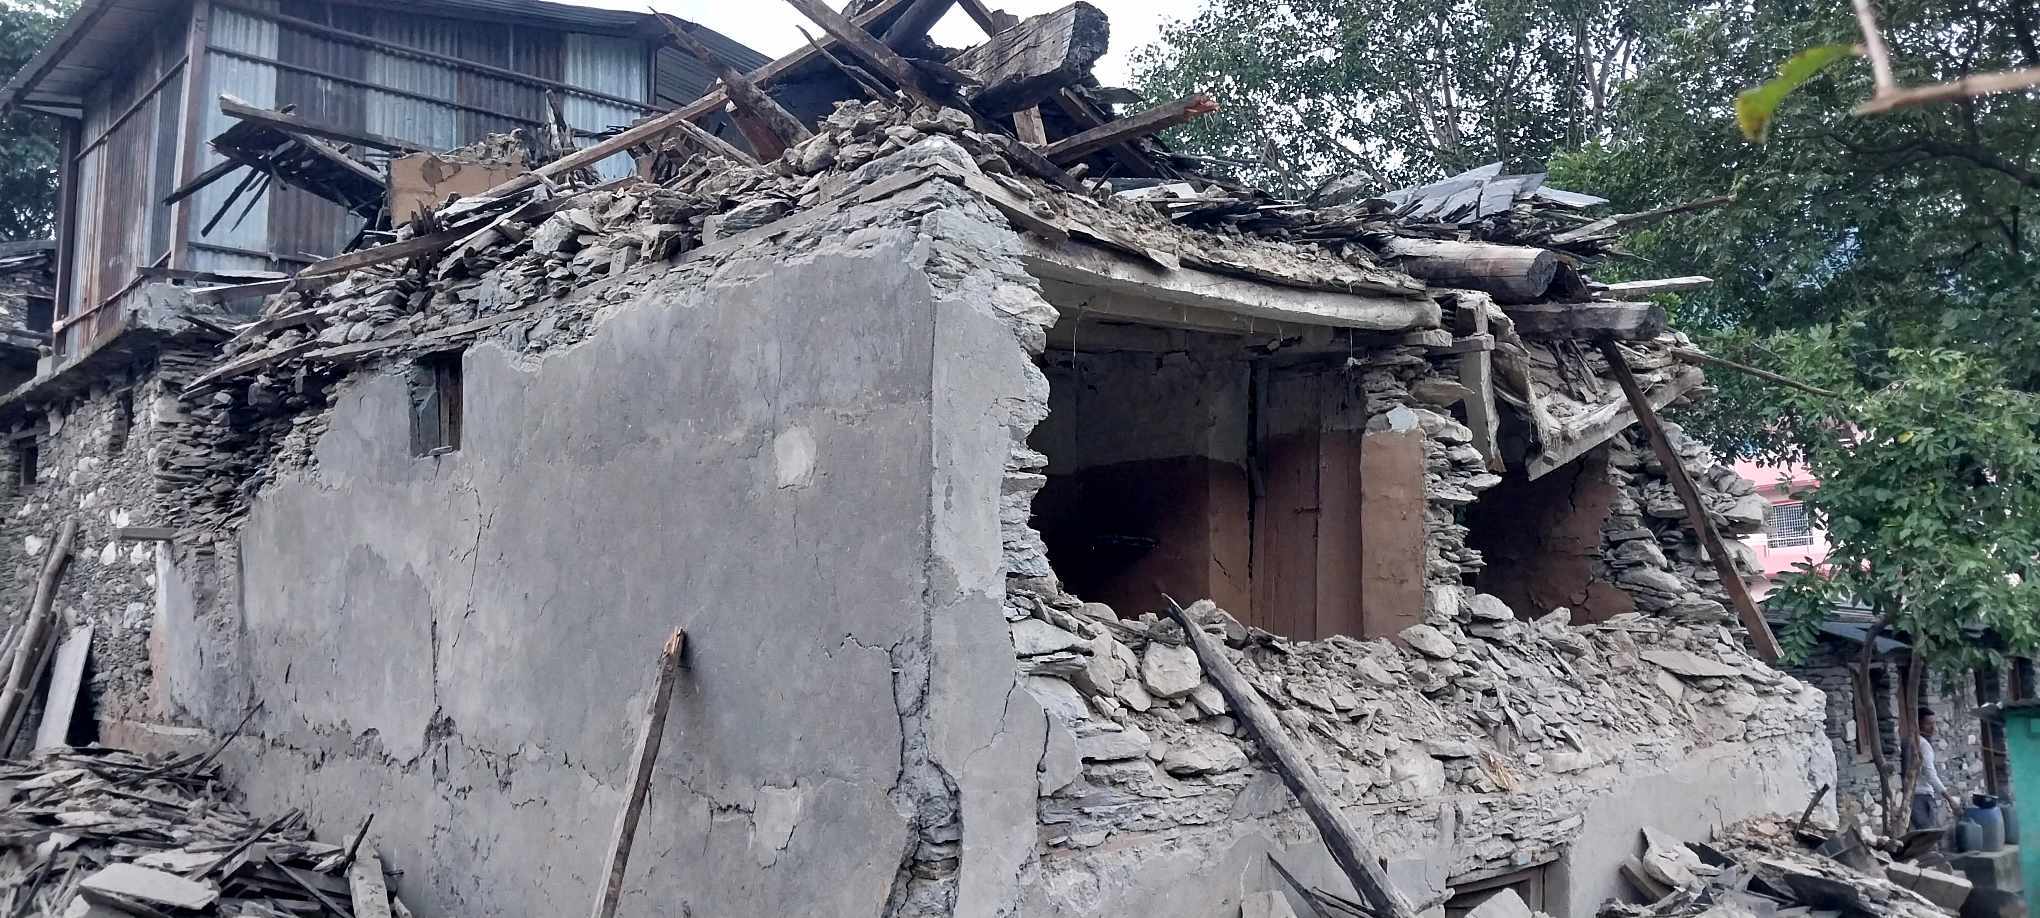 बझाङ भूकम्प अपडेटः एक जनाको मृत्यु, १३५ घर भत्किए